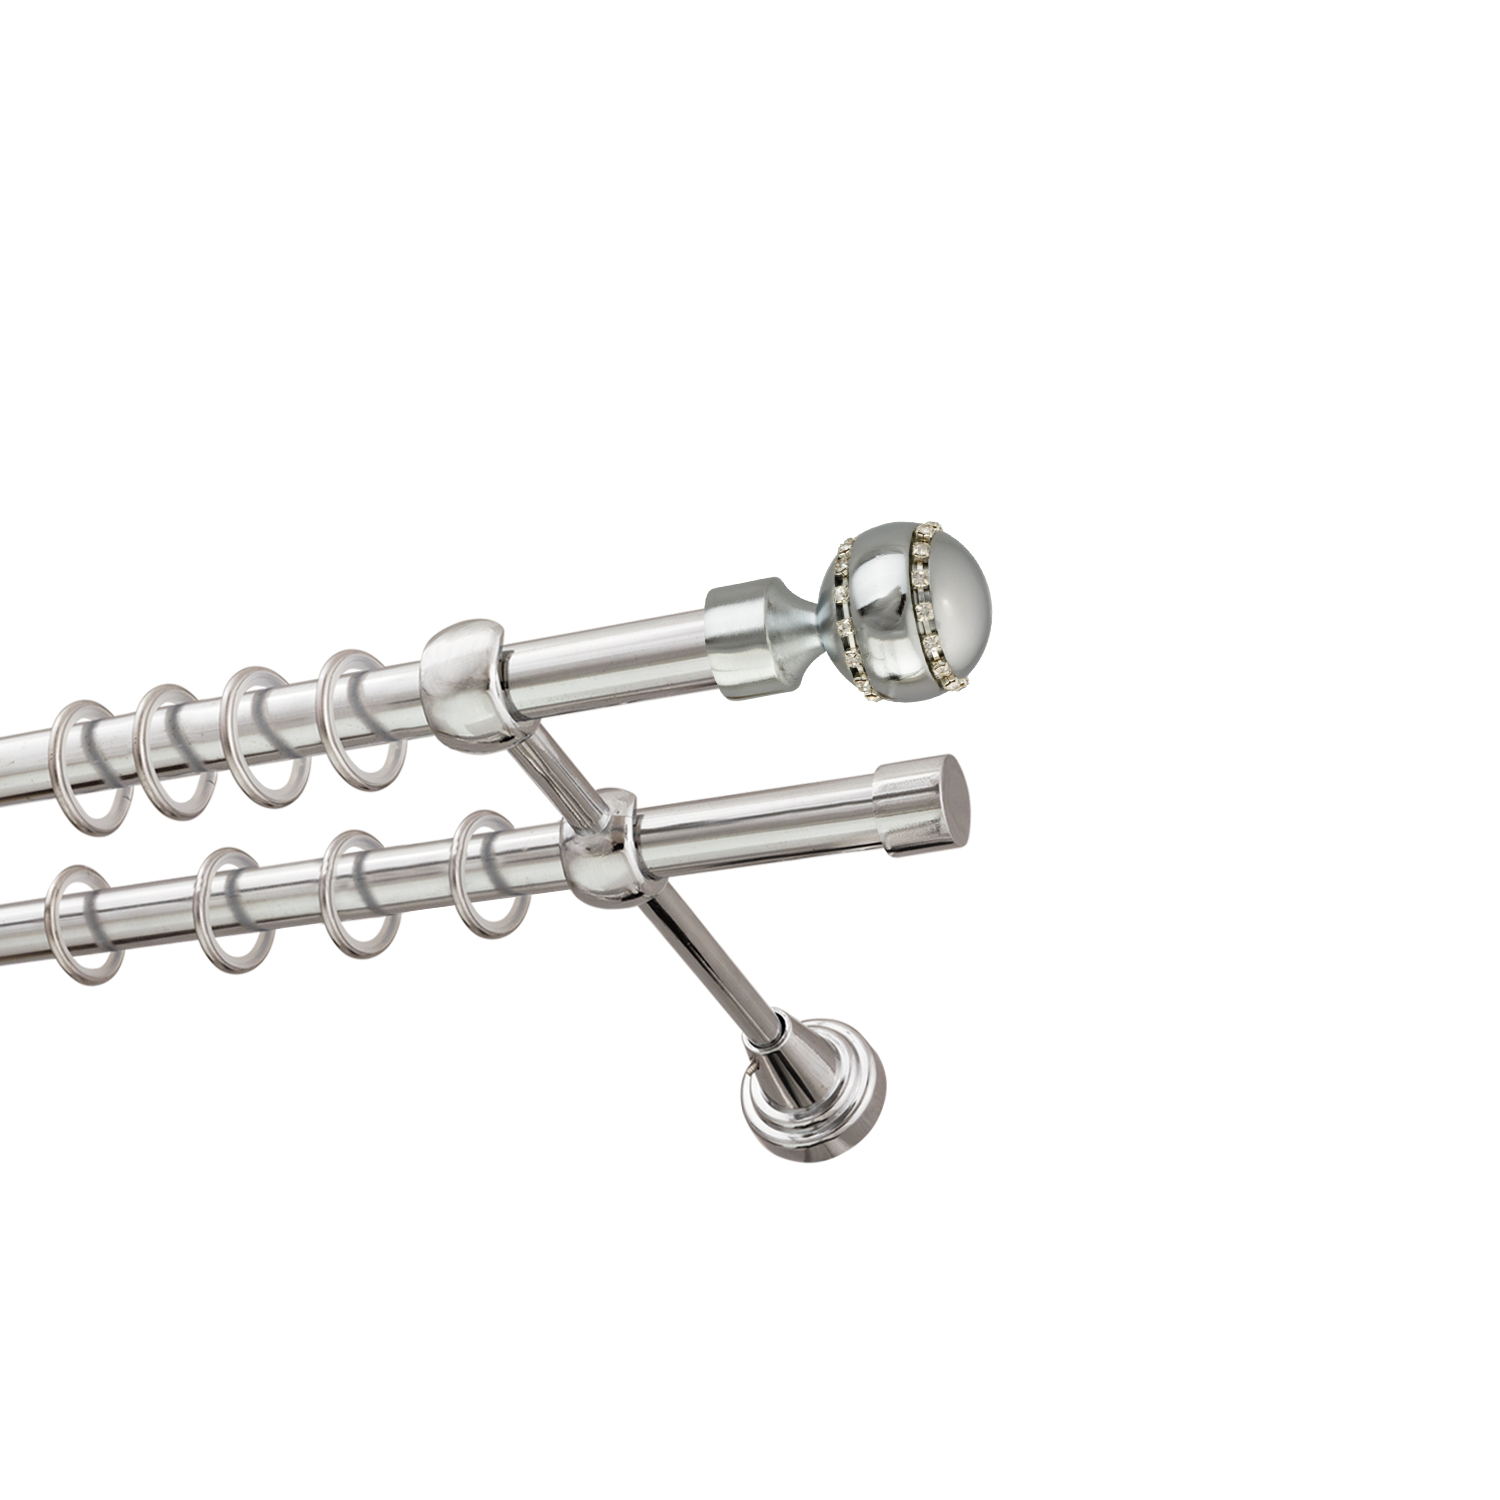 Металлический карниз для штор Модерн, двухрядный 16/16 мм, серебро, гладкая штанга, длина 240 см - фото Wikidecor.ru